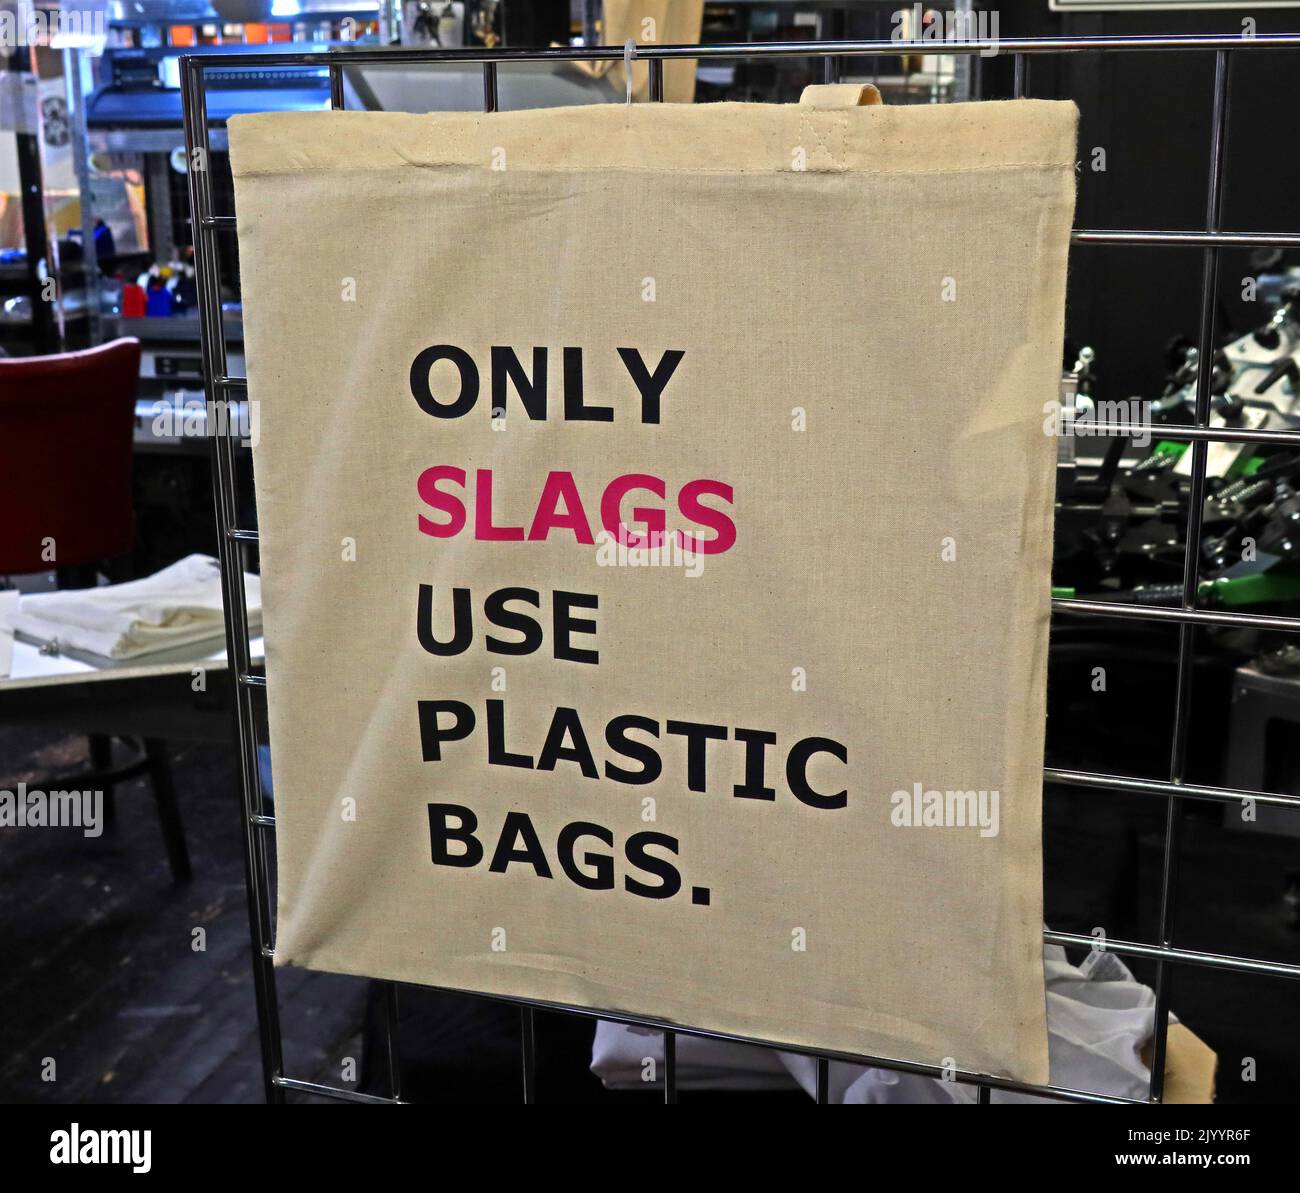 Seuls les scories utilisent des sacs en plastique, un sac de chanvre écologique, en vente à Afflecks Palace, 52 Church St, Manchester, Angleterre, Royaume-Uni, M4 1PW Banque D'Images